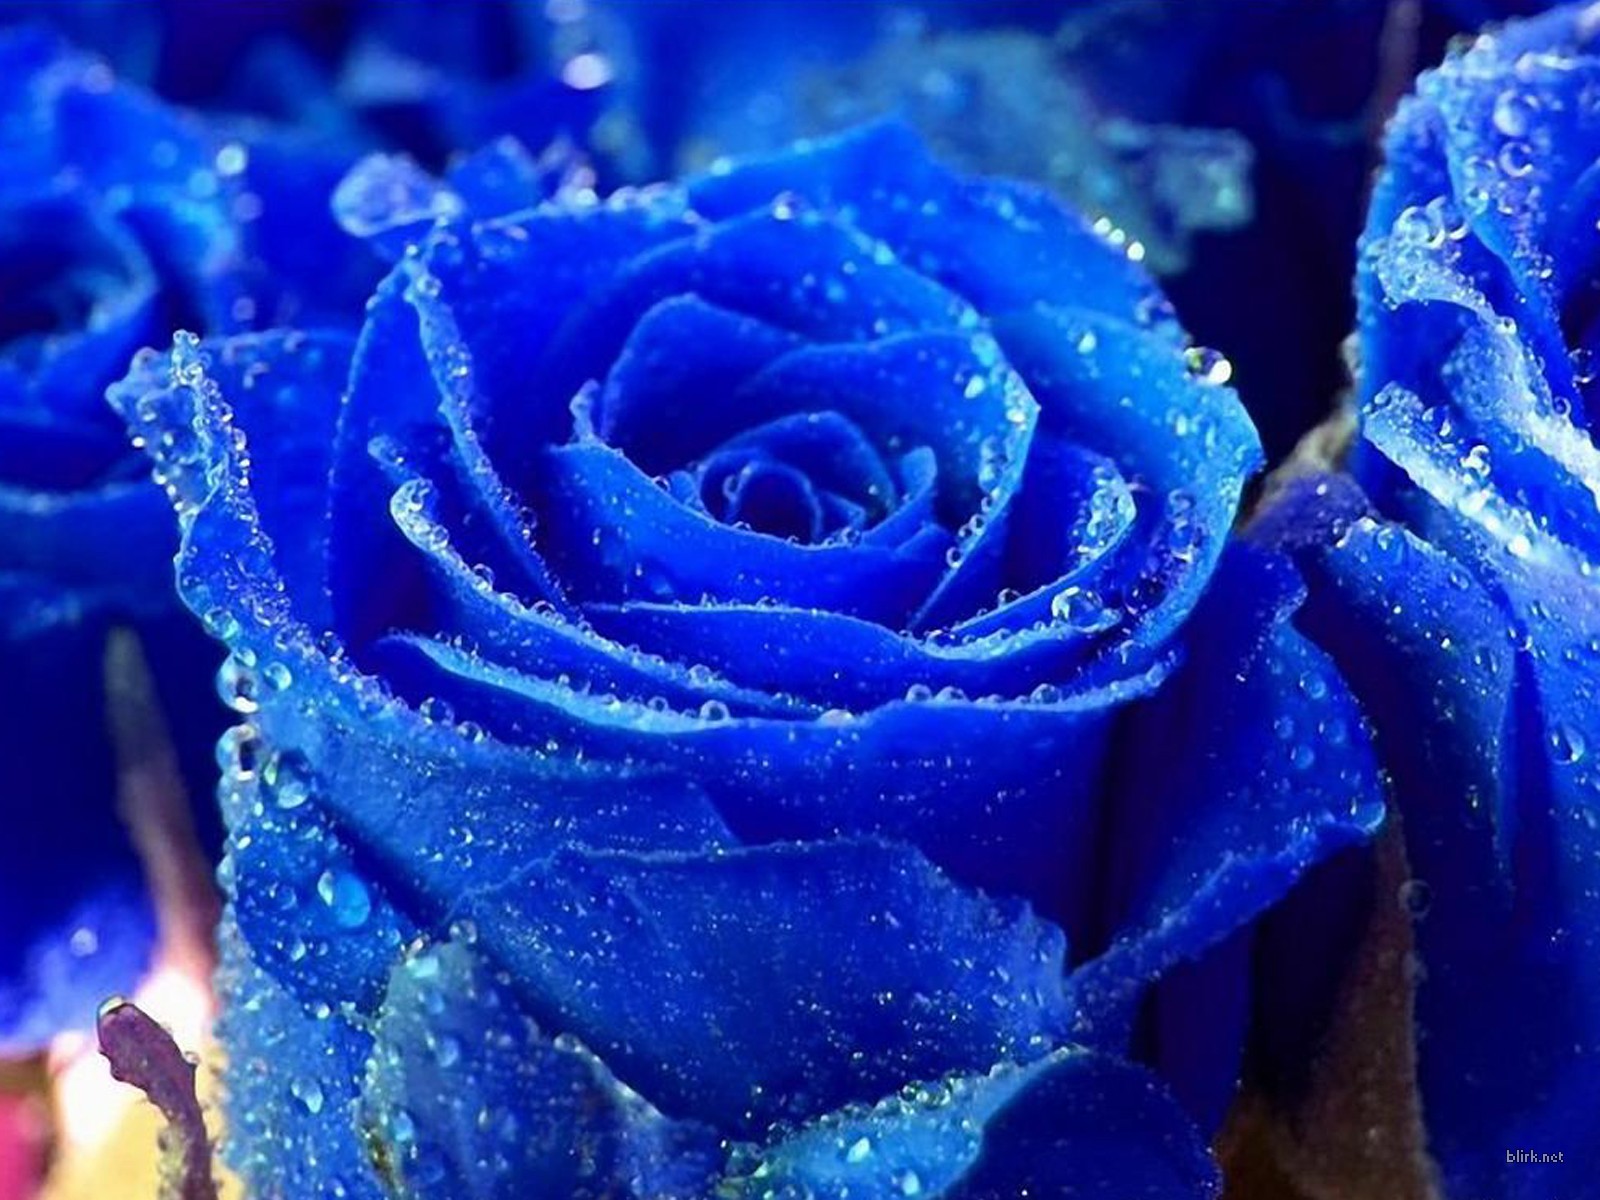 Hãy chiêm ngưỡng vẻ đẹp độc đáo của loài hồng xanh qua bức tranh hình nền hoa hồng xanh đầy sắc màu. Tựa như dòng chảy của nước biển, những cánh hoa xanh tươi đem đến cảm giác tươi mới và thư thái cho tâm hồn.